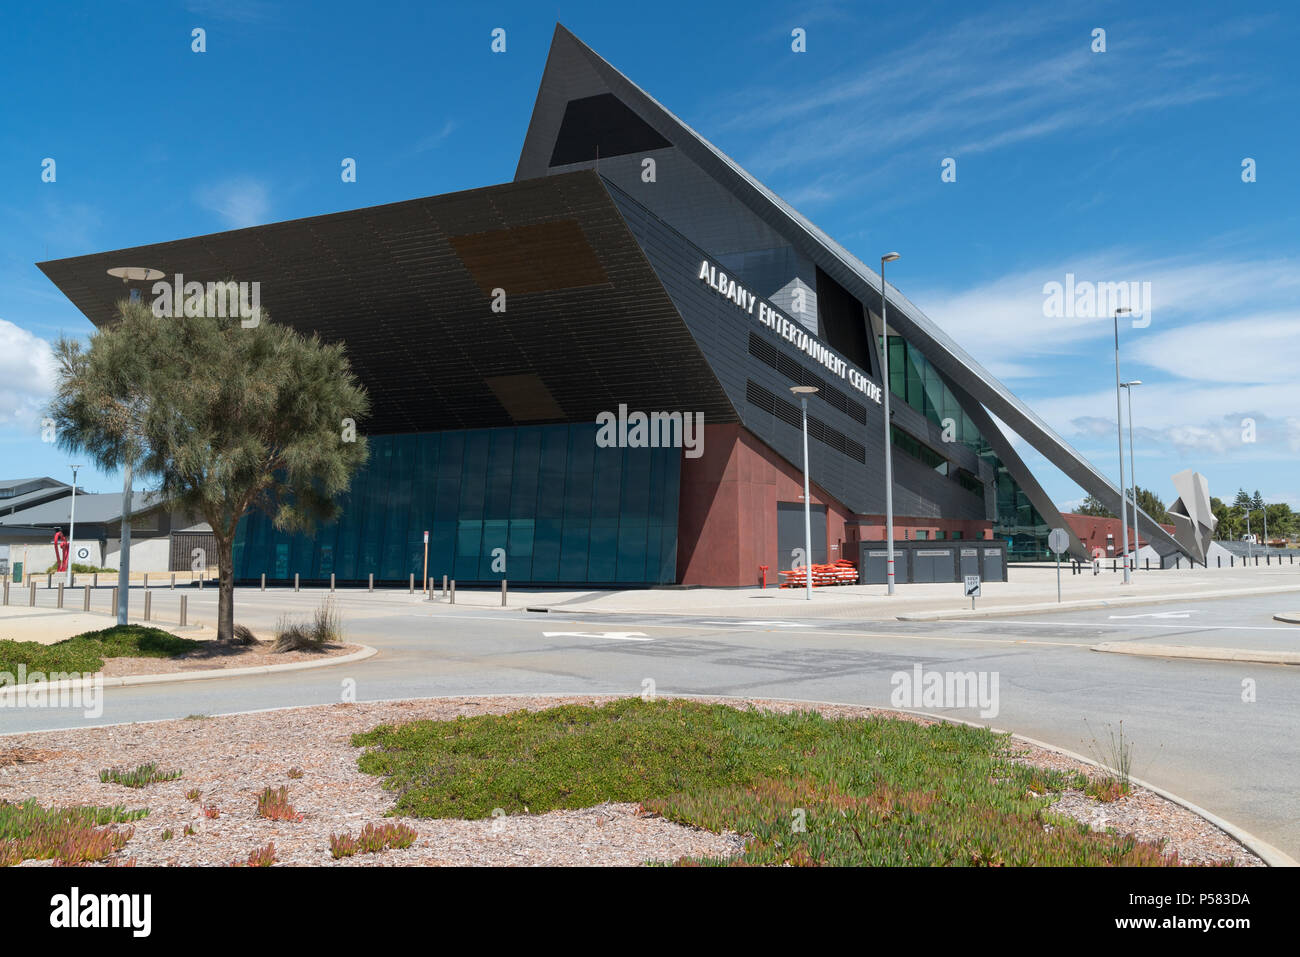 ALBANY, AUSTRALIE - Février 5, 2018 : Centre de loisirs, l'architecture moderne à Albany le 5 février 2018 dans l'ouest de l'Australie Banque D'Images